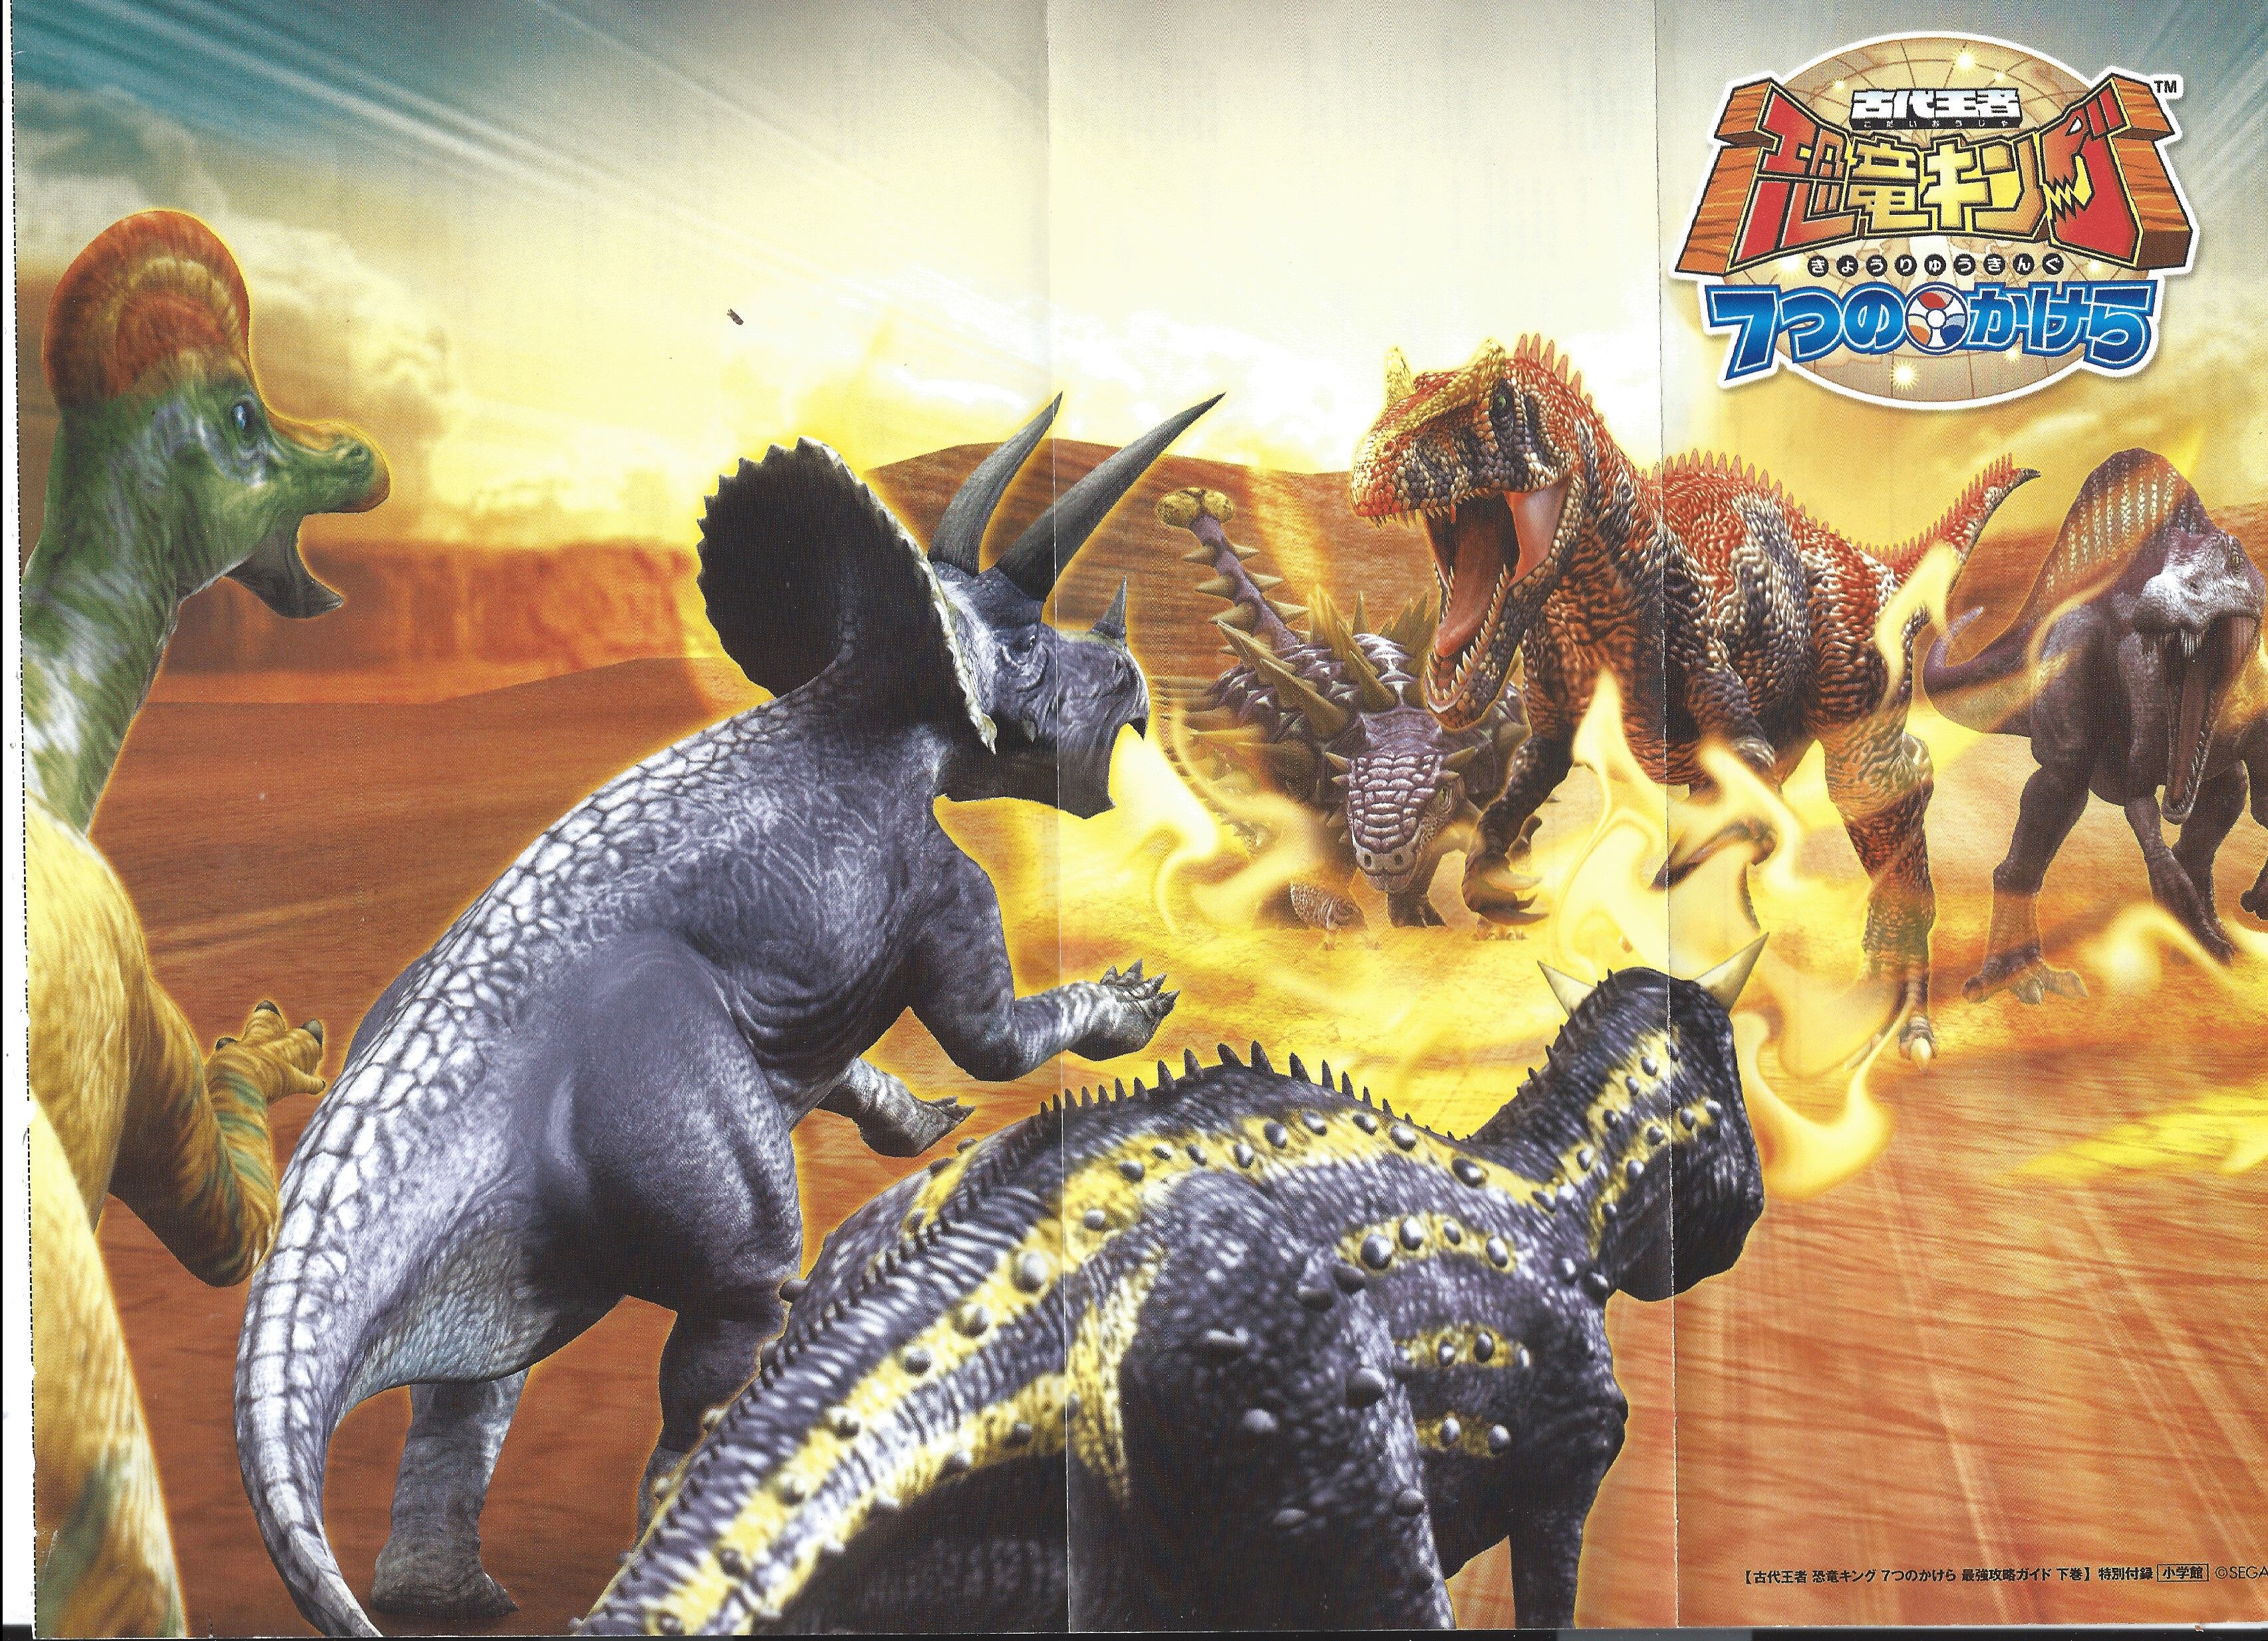 cw dinosaur king games